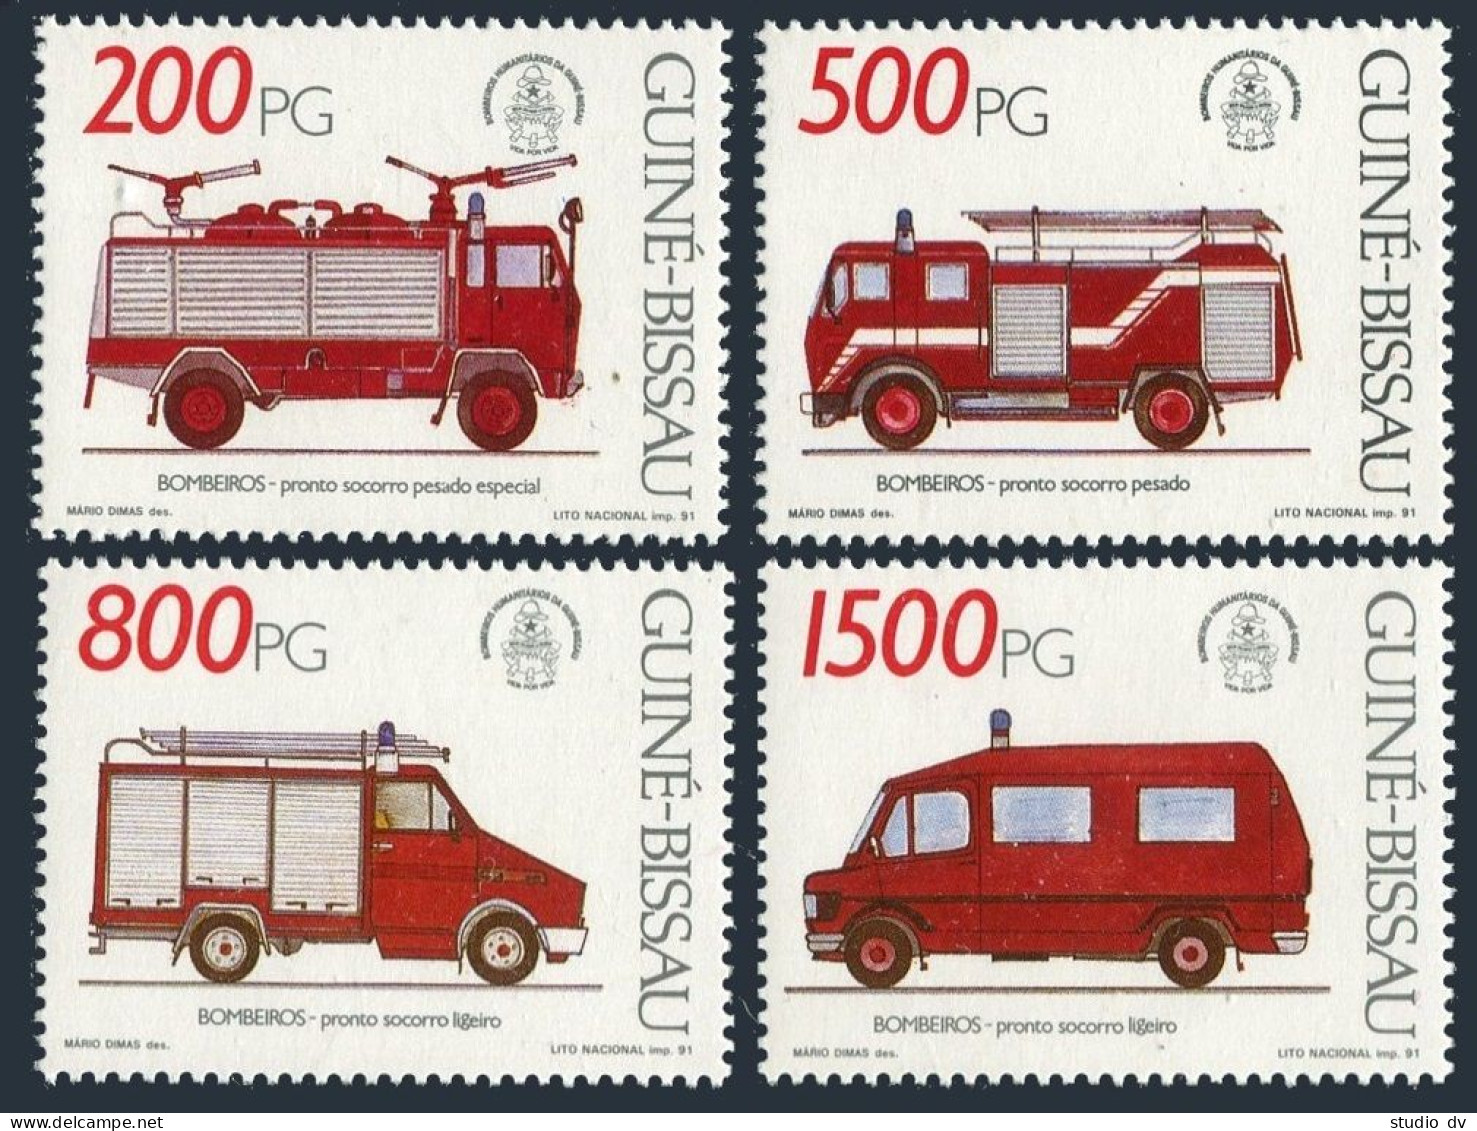 Guinea Bissau 908-911,MNH.Michel 1143-1146. Fire Trucks,1991. - Guinea-Bissau